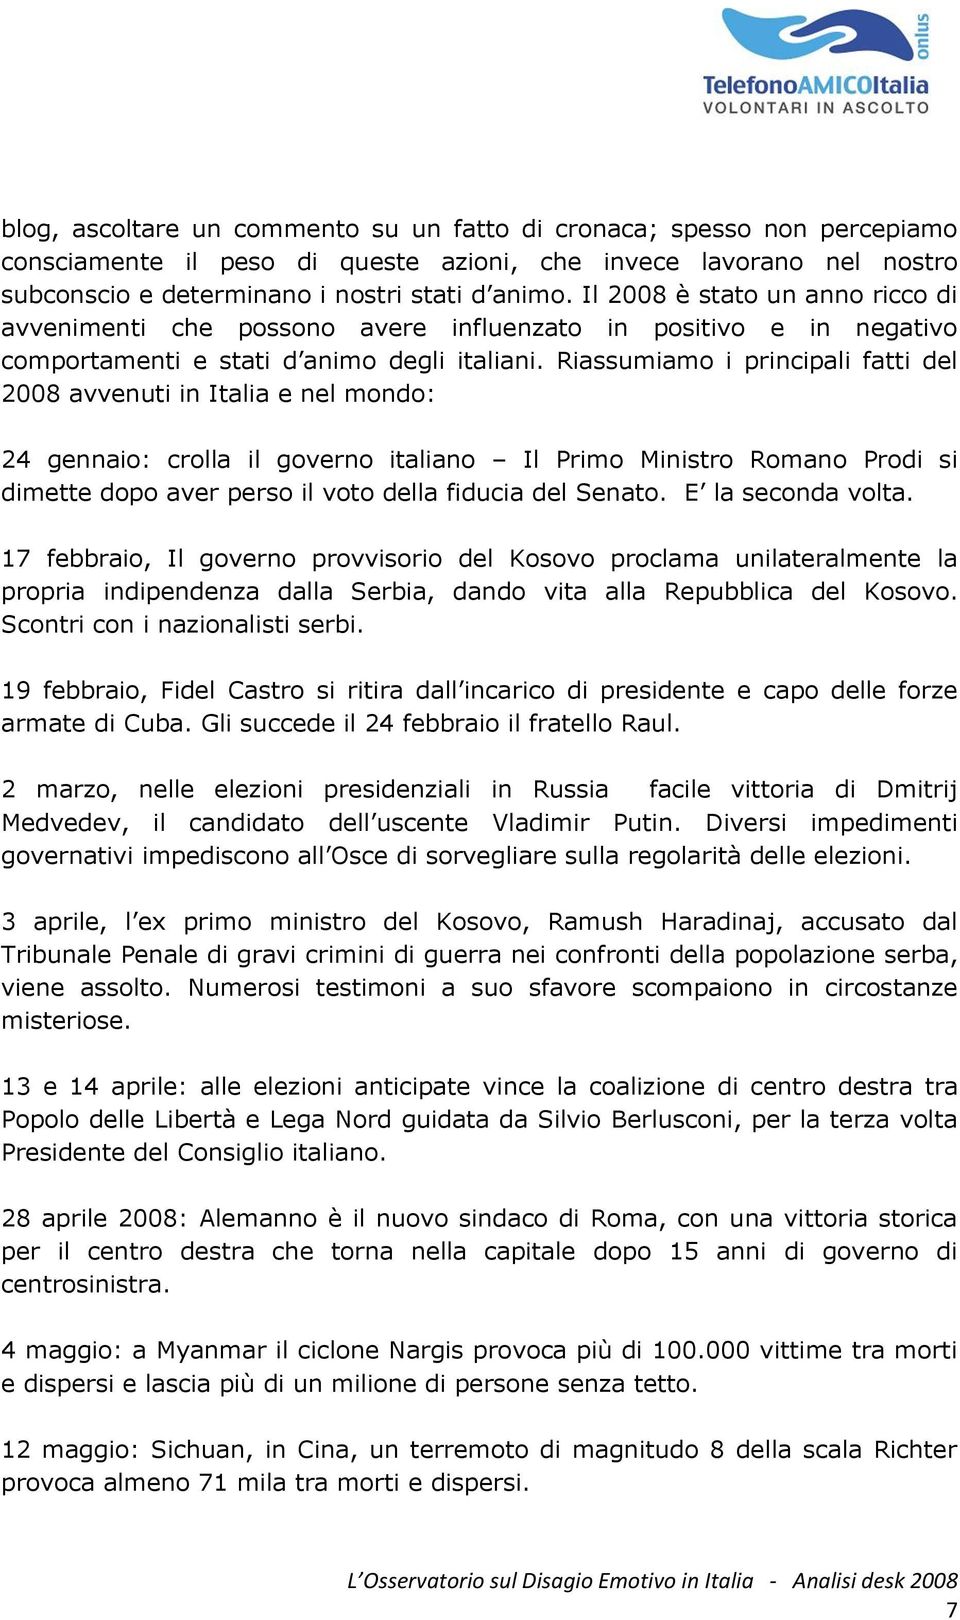 Riassumiamo i principali fatti del 2008 avvenuti in Italia e nel mondo: 24 gennaio: crolla il governo italiano Il Primo Ministro Romano Prodi si dimette dopo aver perso il voto della fiducia del